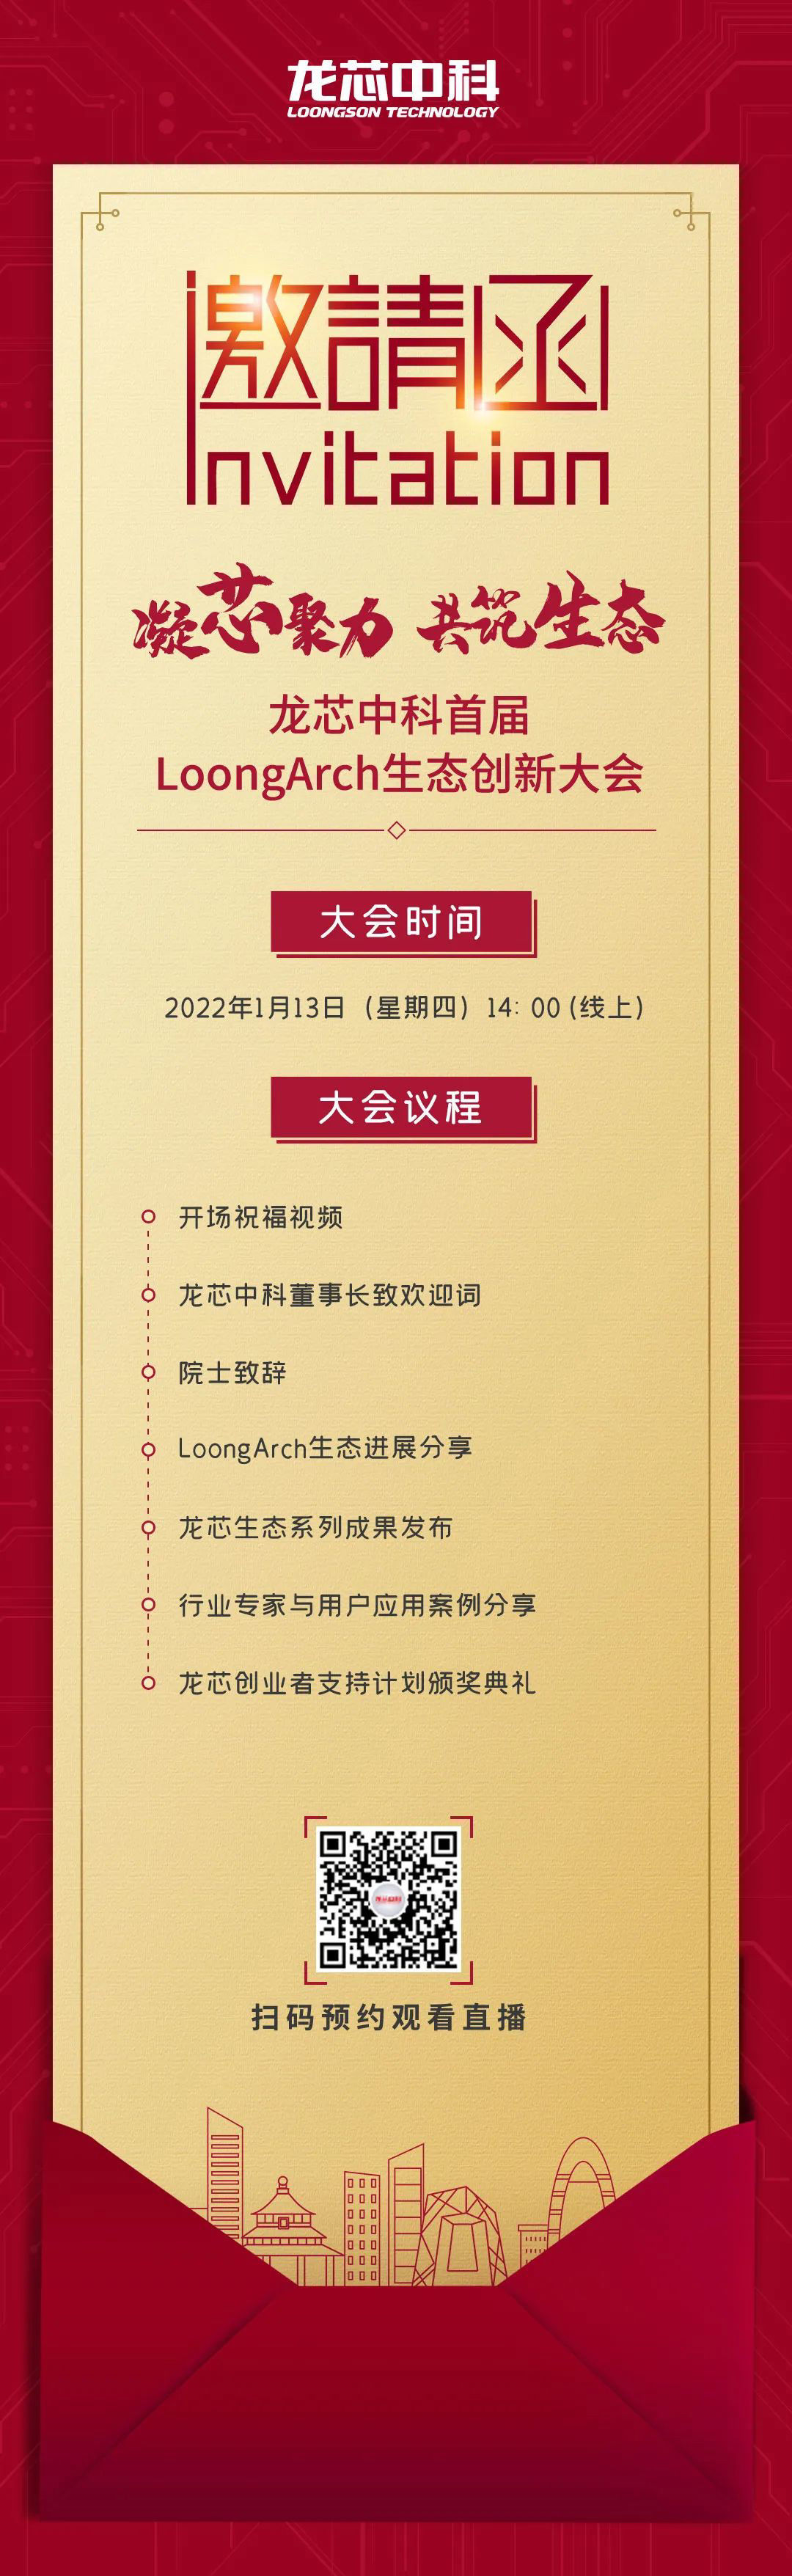 颁奖典礼|龙芯中科：首届 LoongArch 生态创新大会将在 1 月 13 日举行